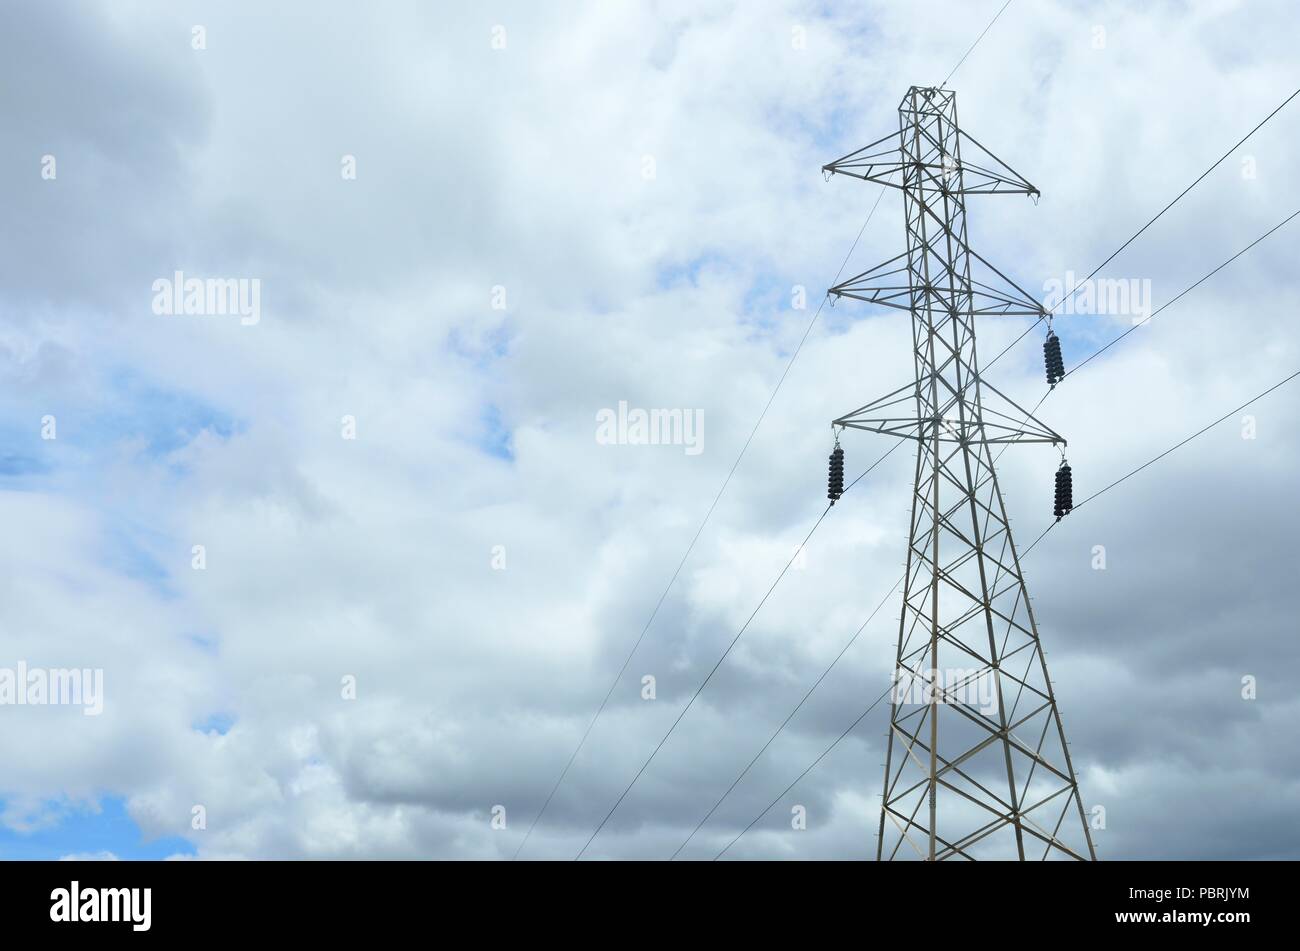 Une transmission ou l'utilitaire - Puissance - poteau d'électricité, des câbles pour installations de distribution d'électricité ou en fonction de sa demande, à proximité de Mumbai, Inde Banque D'Images